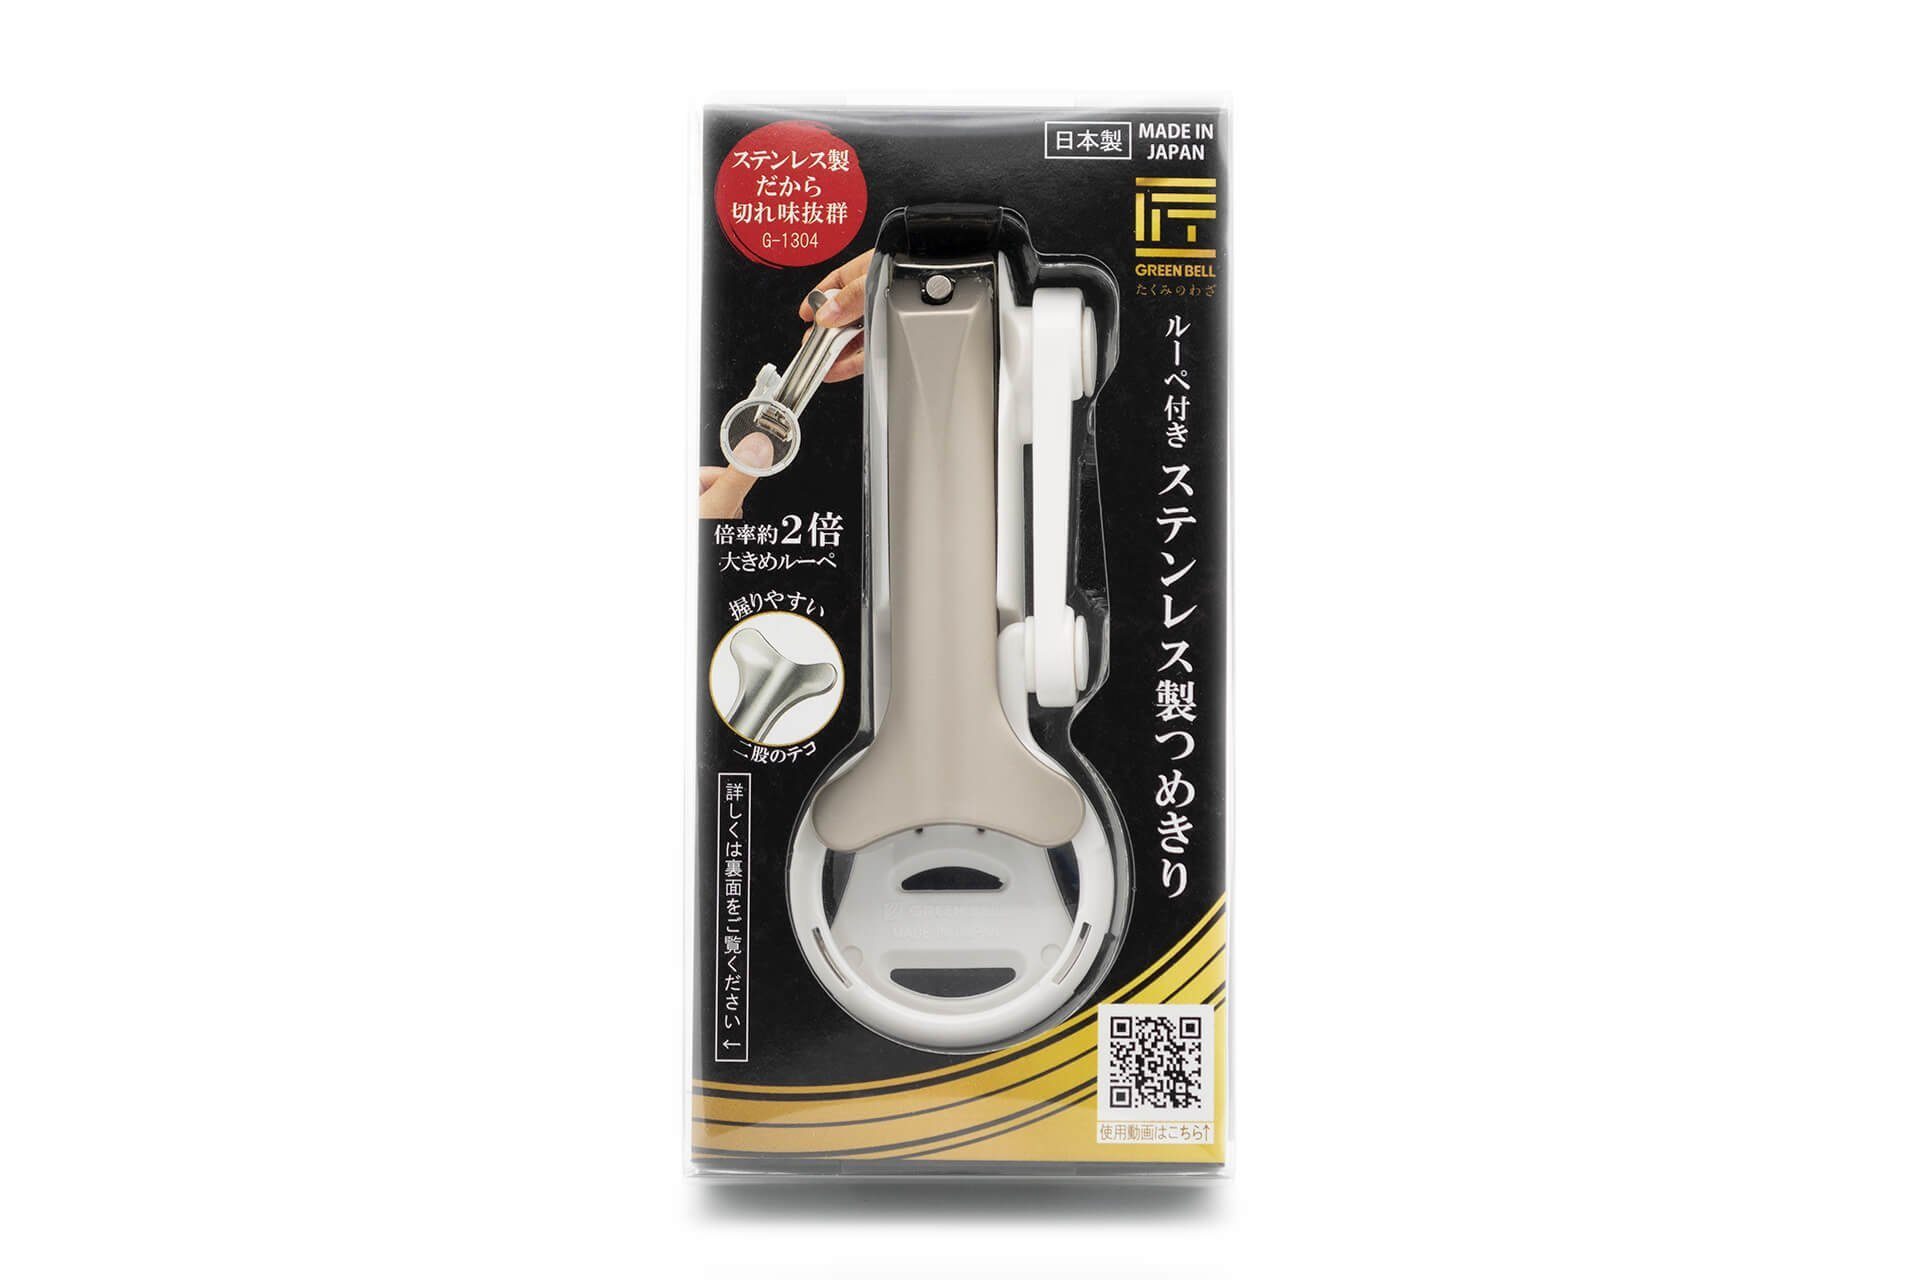 Nagelknipser Japan EDGE Seki aus Leicht Nagelknipser Qualitätsprodukt 11.5x0.8x0.6 einsehbarer cm, G-1304 handgeschärftes